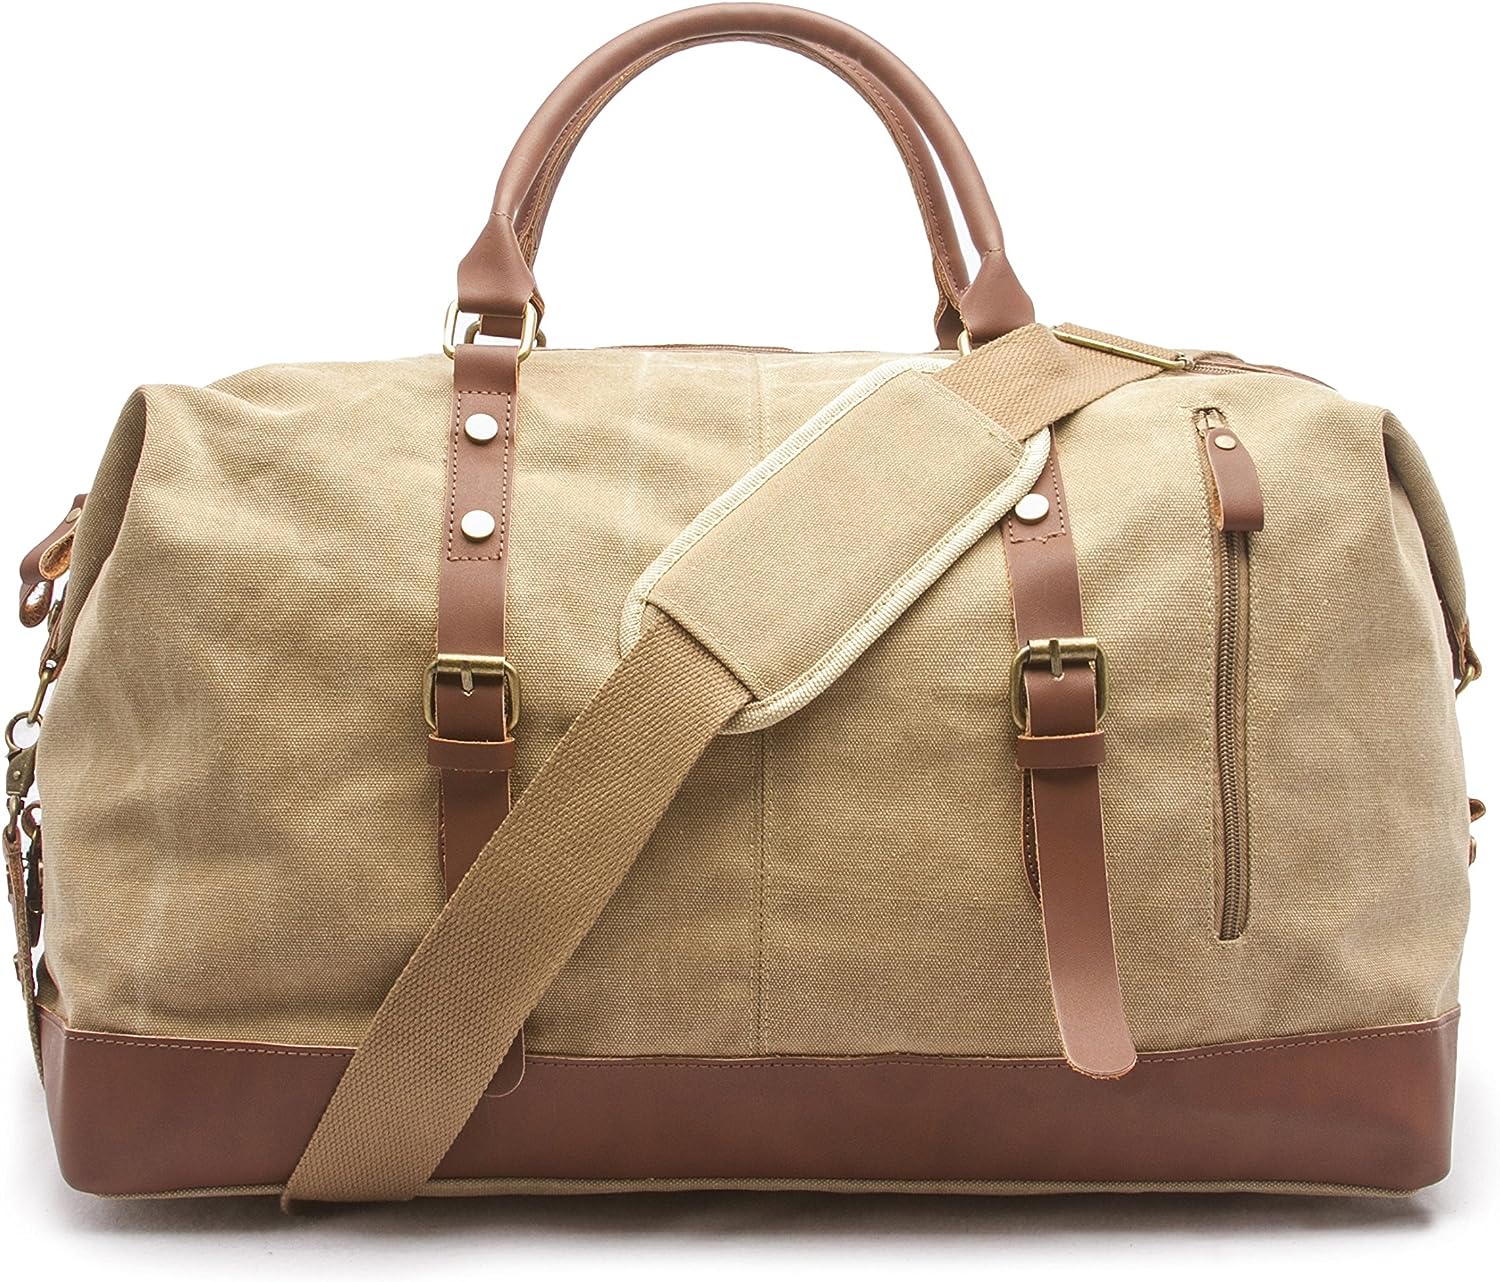 soft travel duffel bag